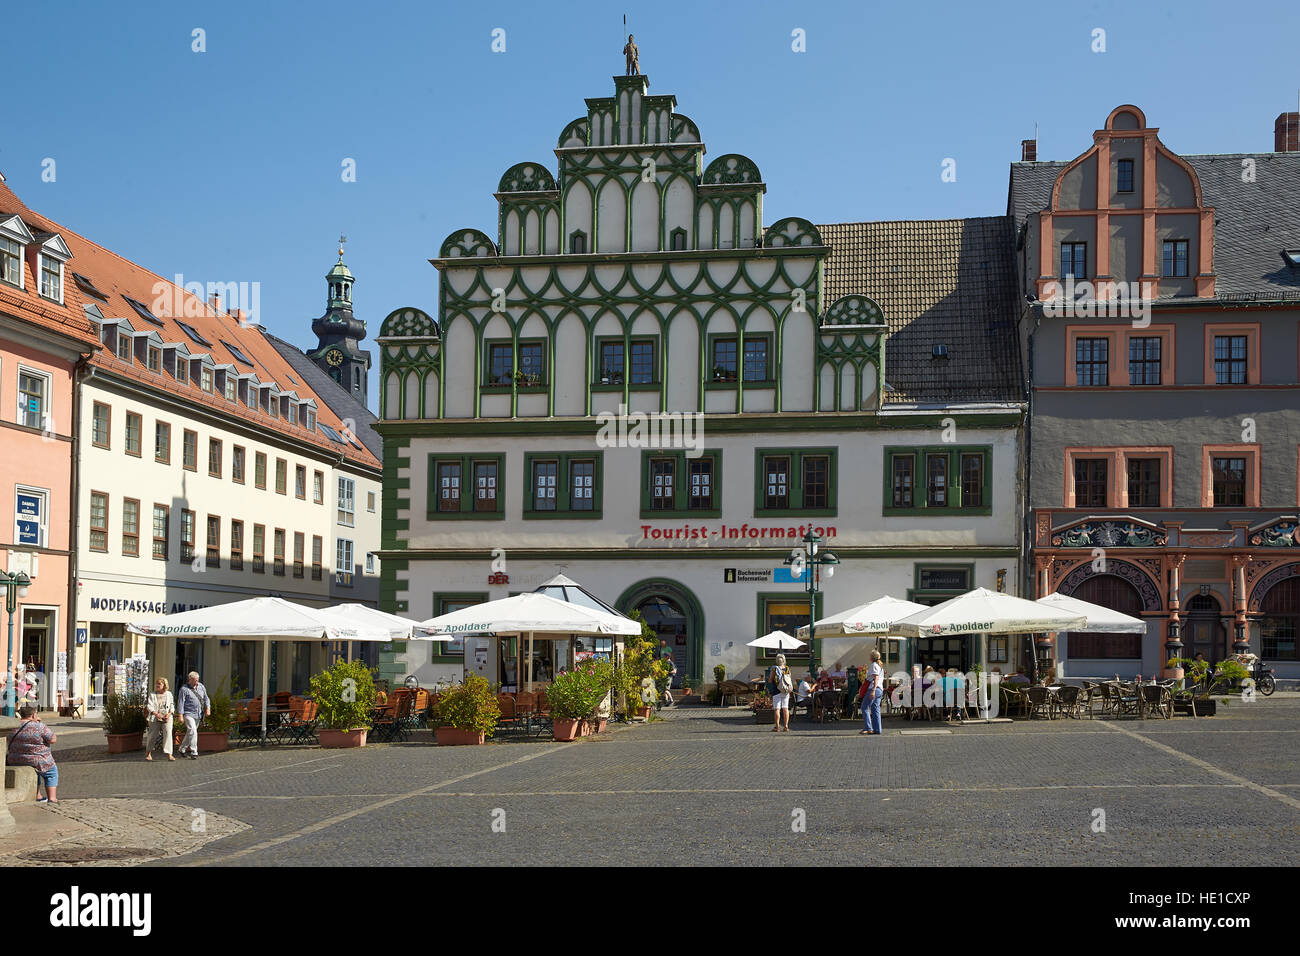 Ayuntamiento, Centro de información turística en el mercado, Weimar, Turingia, Alemania Foto de stock